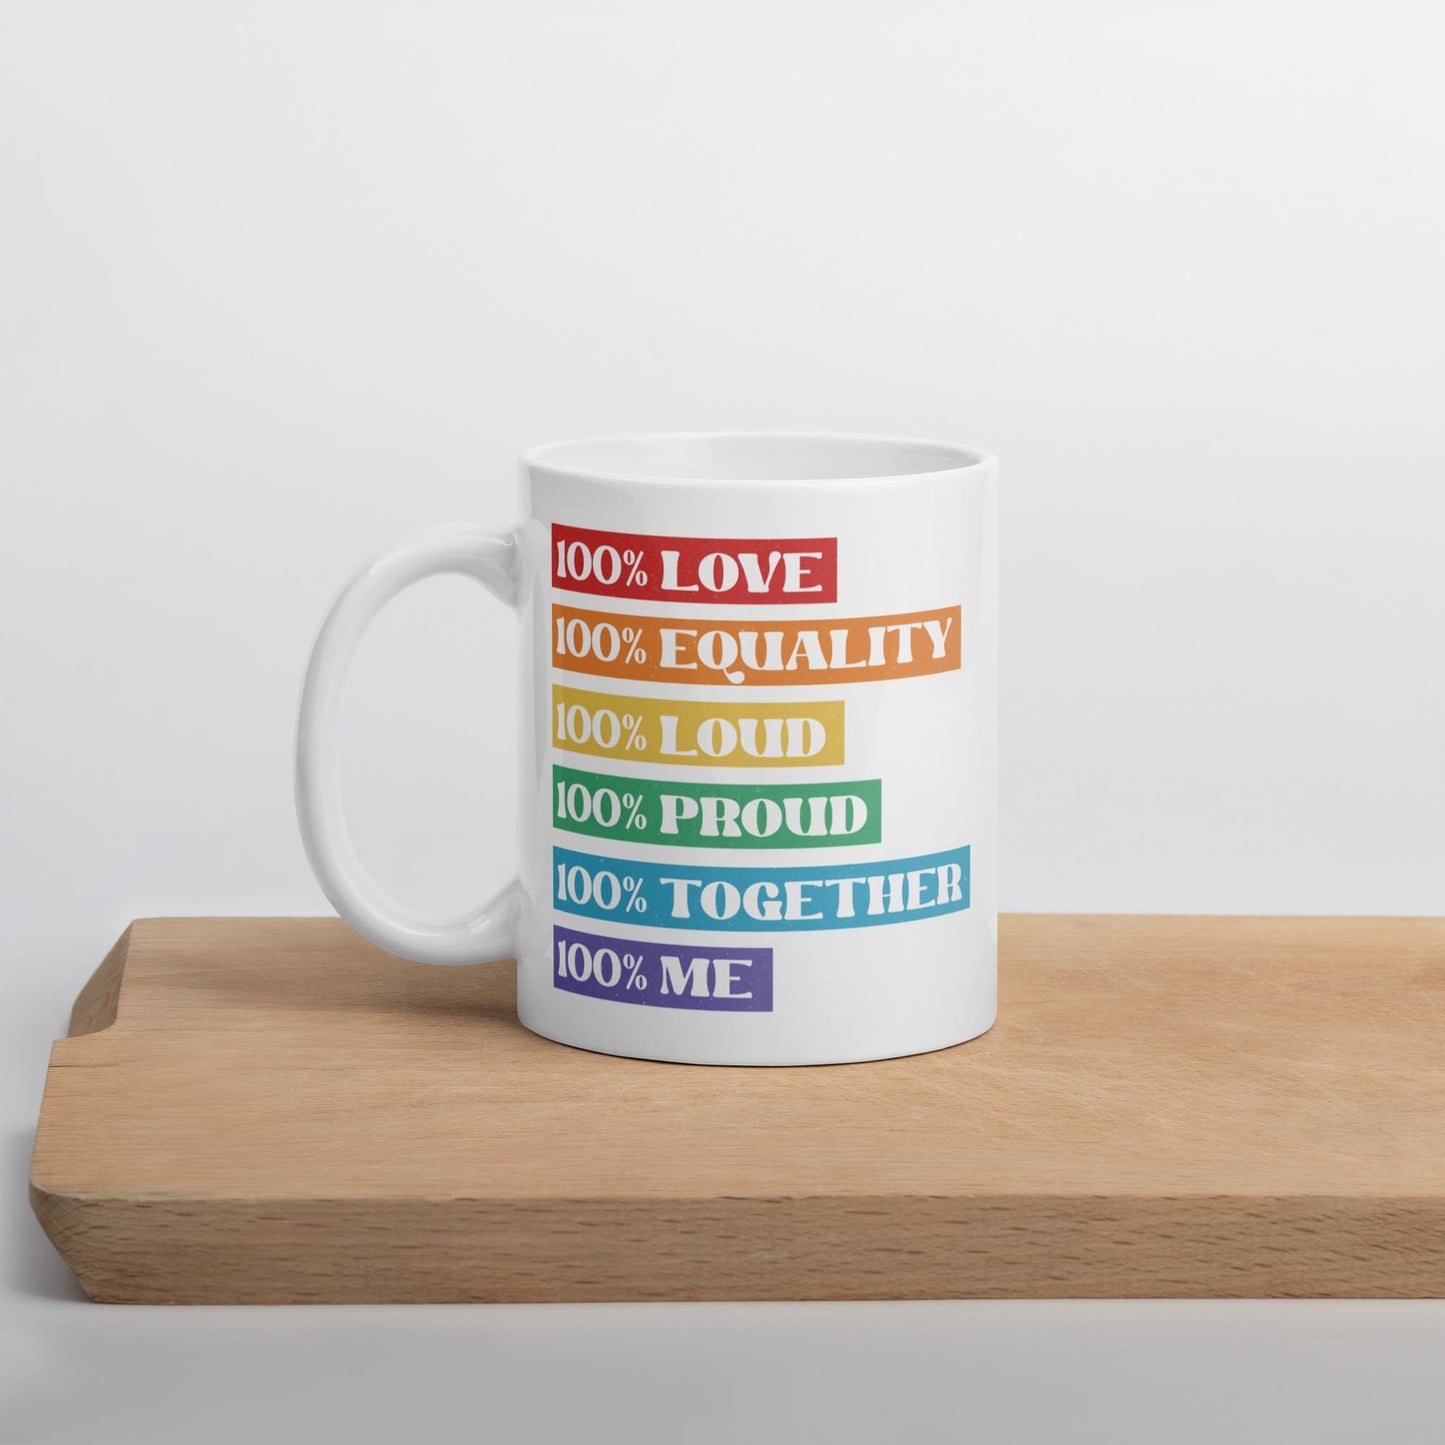 LGBTQ pride mug, LGBT awareness coffee or tea mug on table